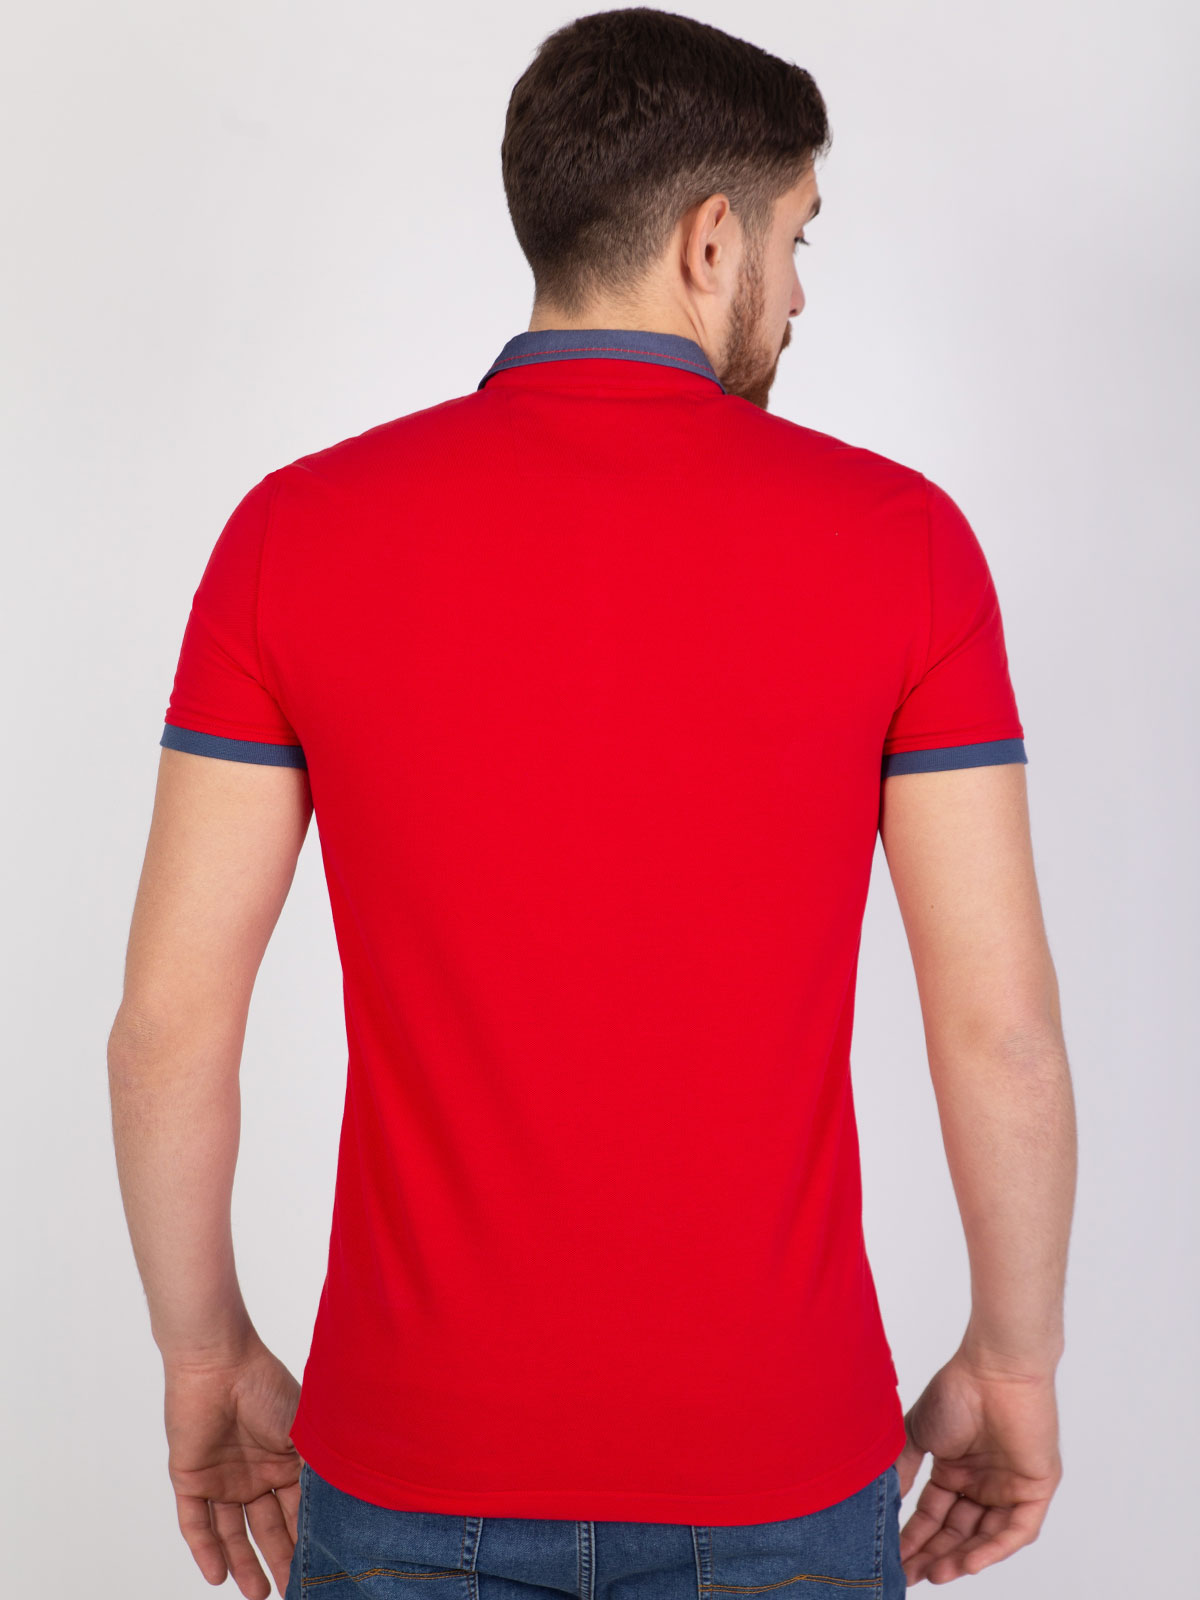  κόκκινη μπλούζα με τζιν γιακά  - 93402 € 25.87 img4